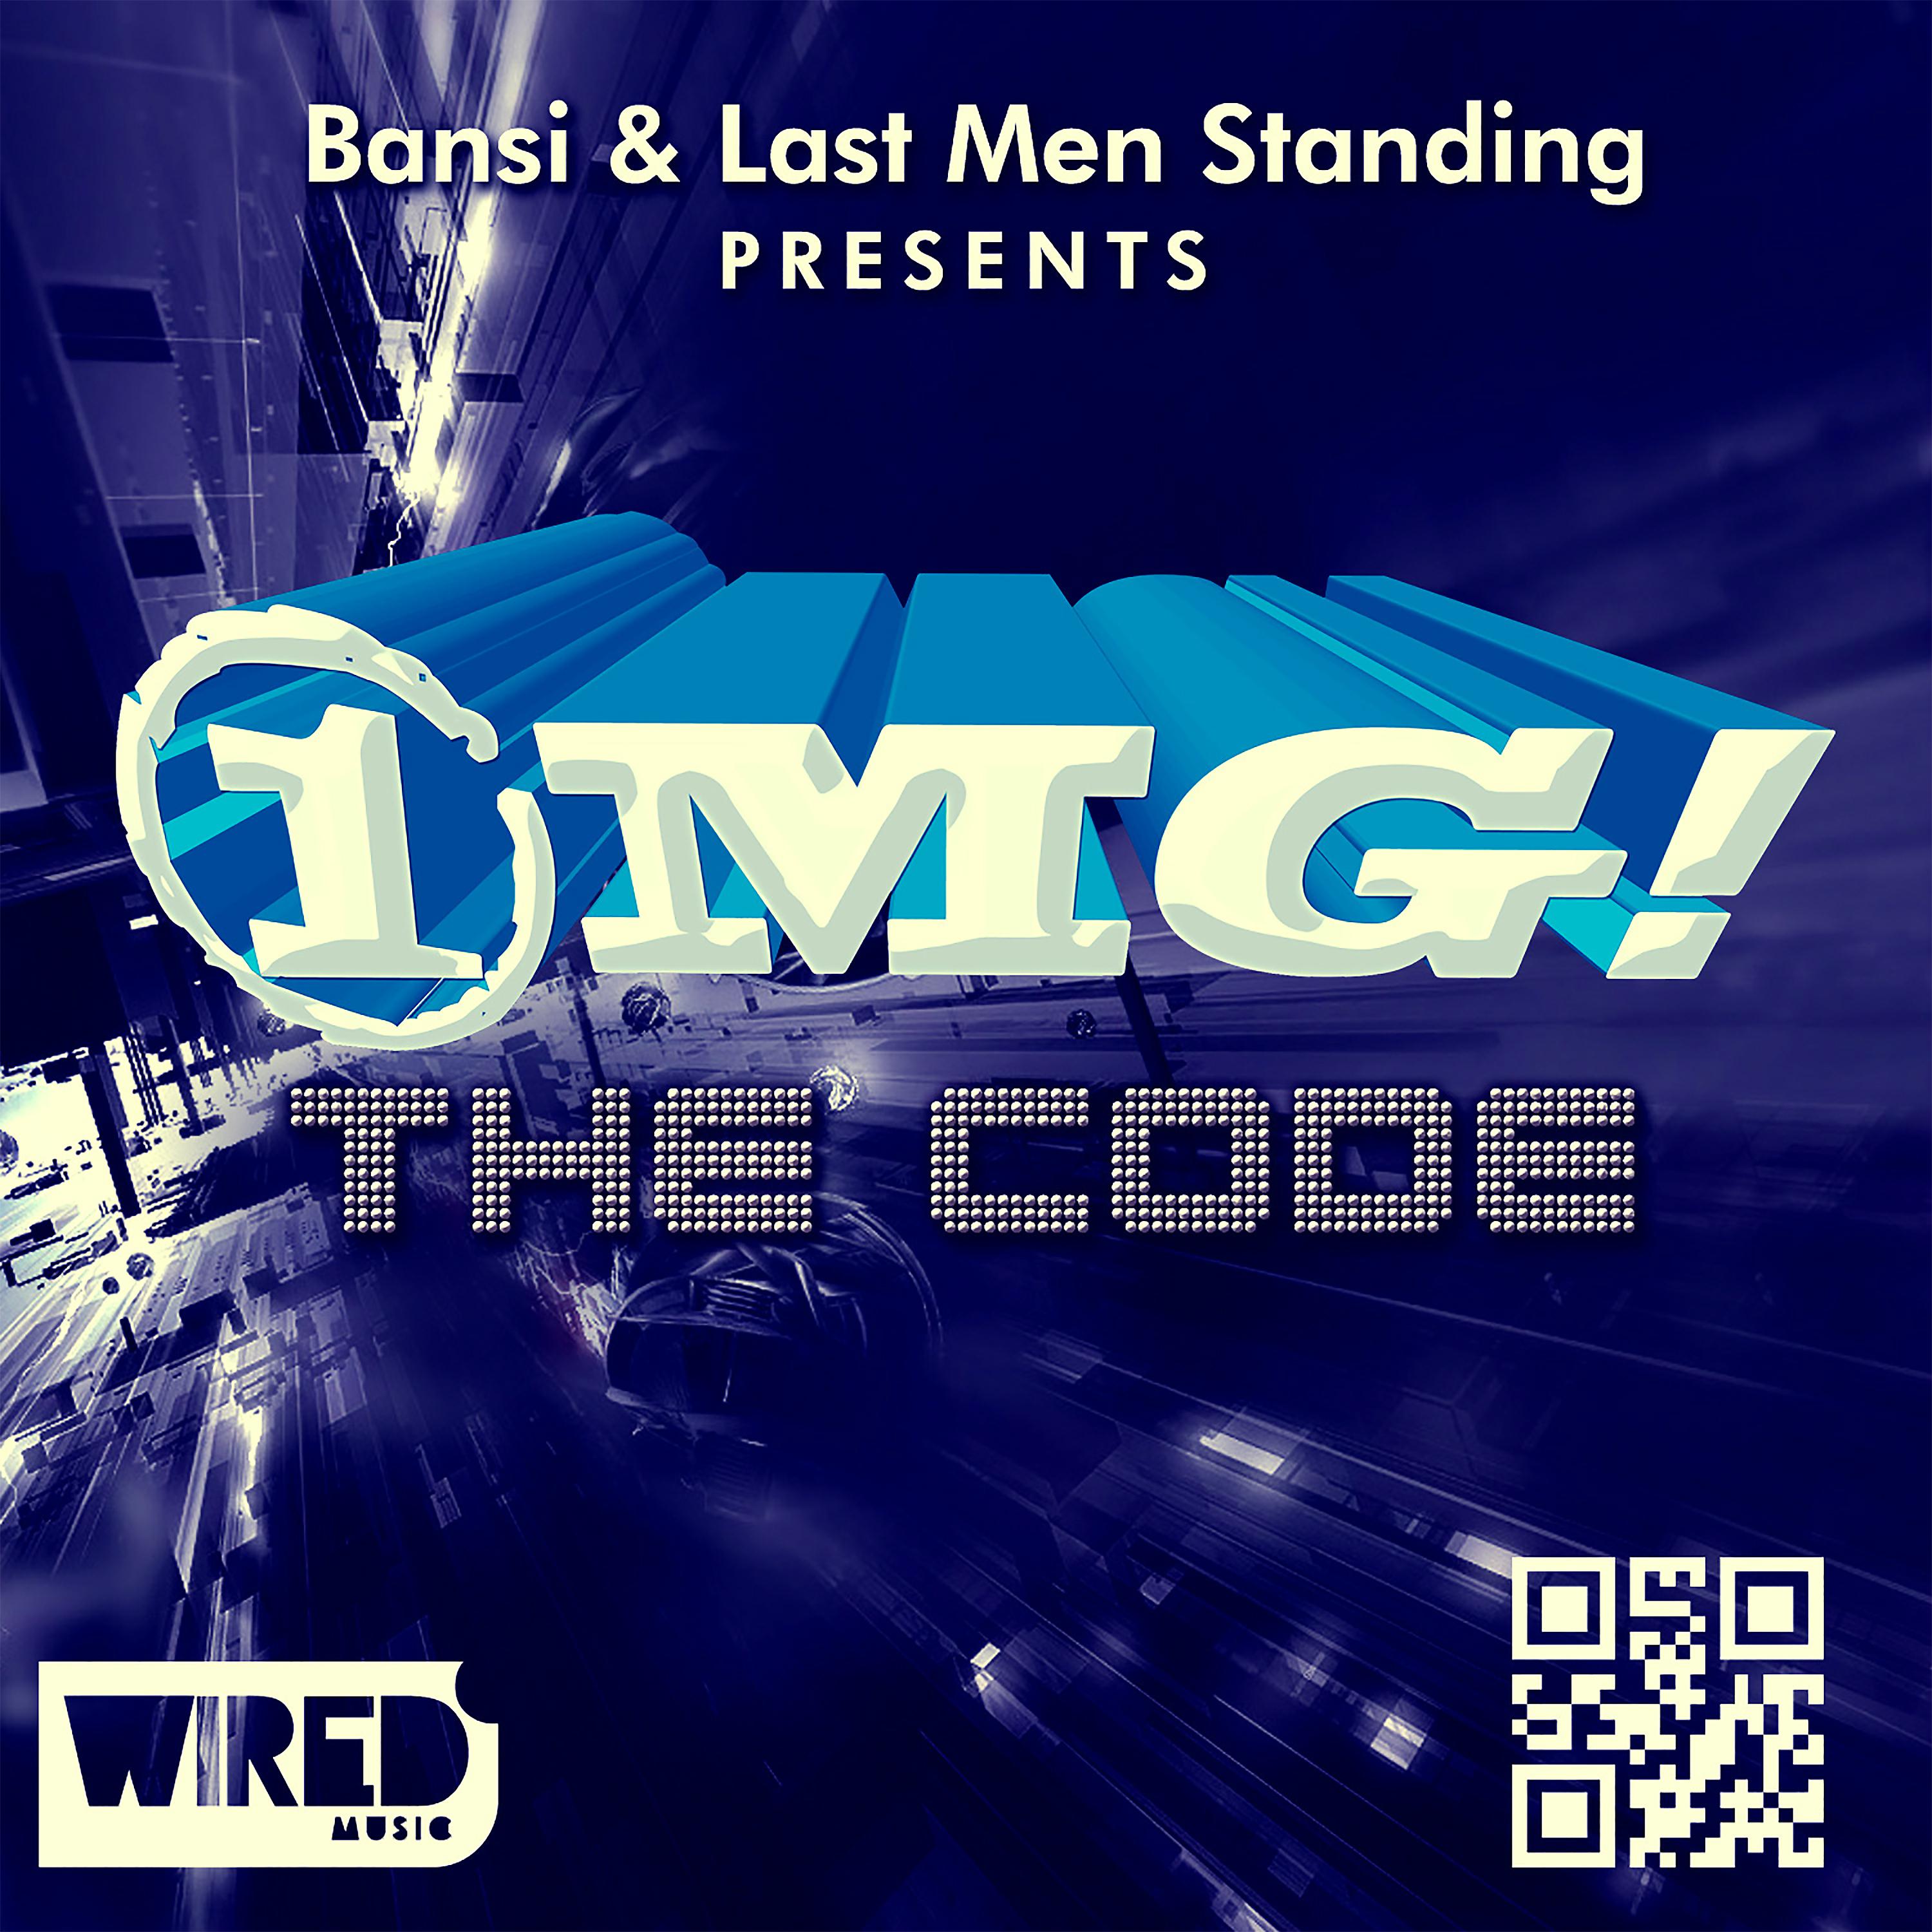 Постер альбома The Code